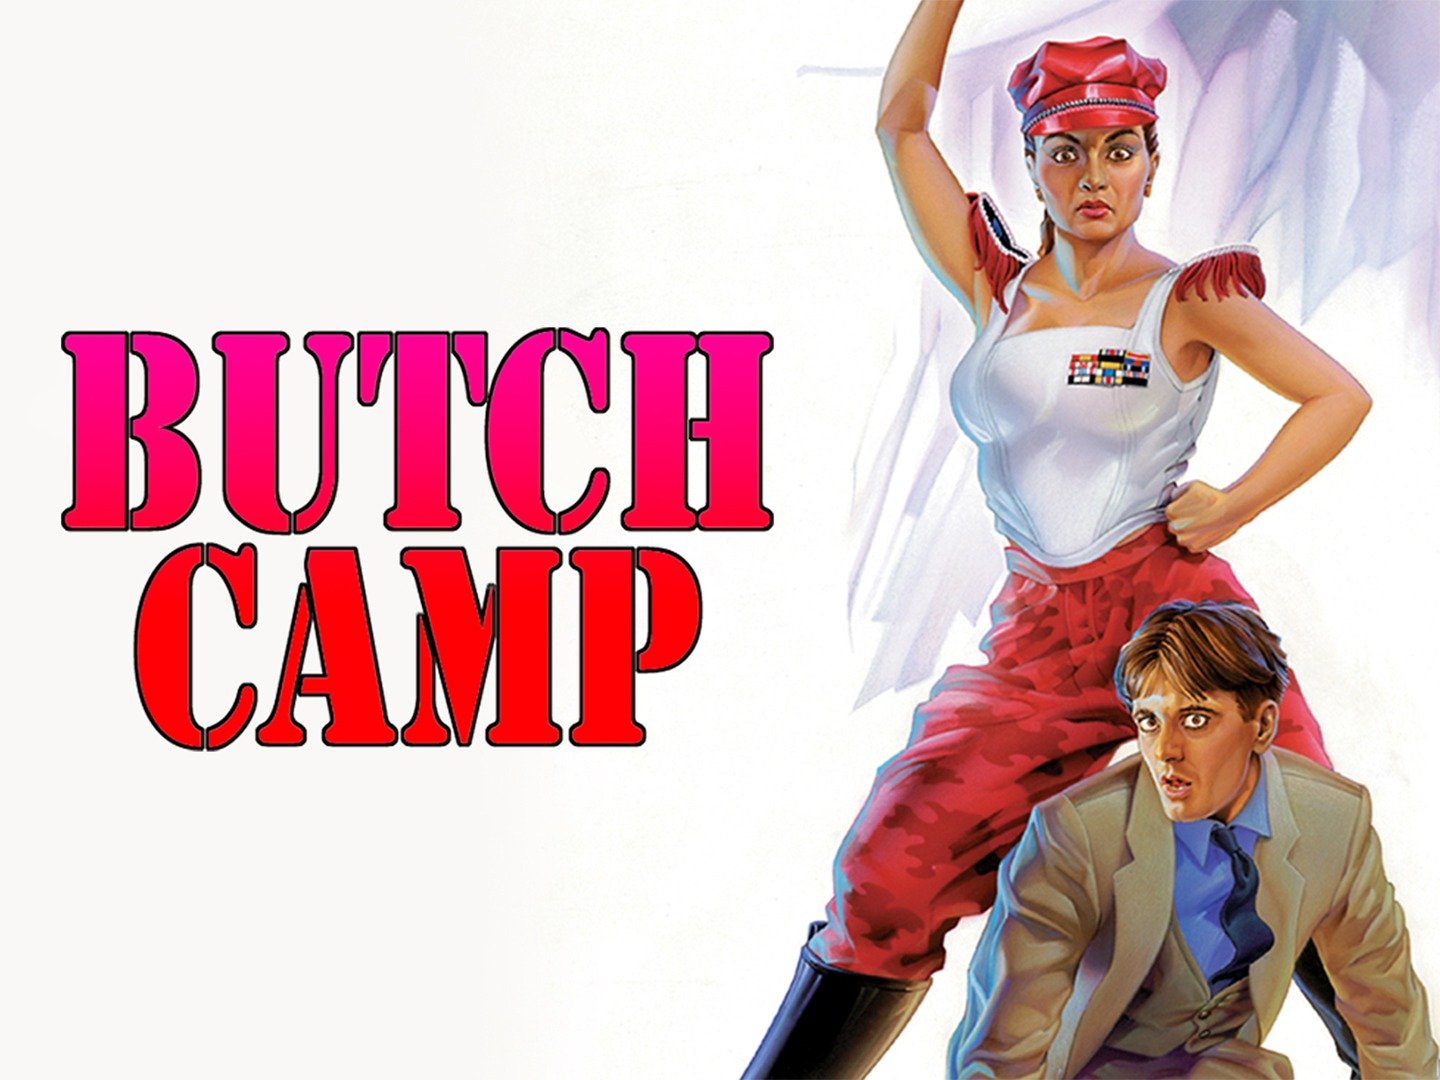 Butch Camp - Movie Reviews